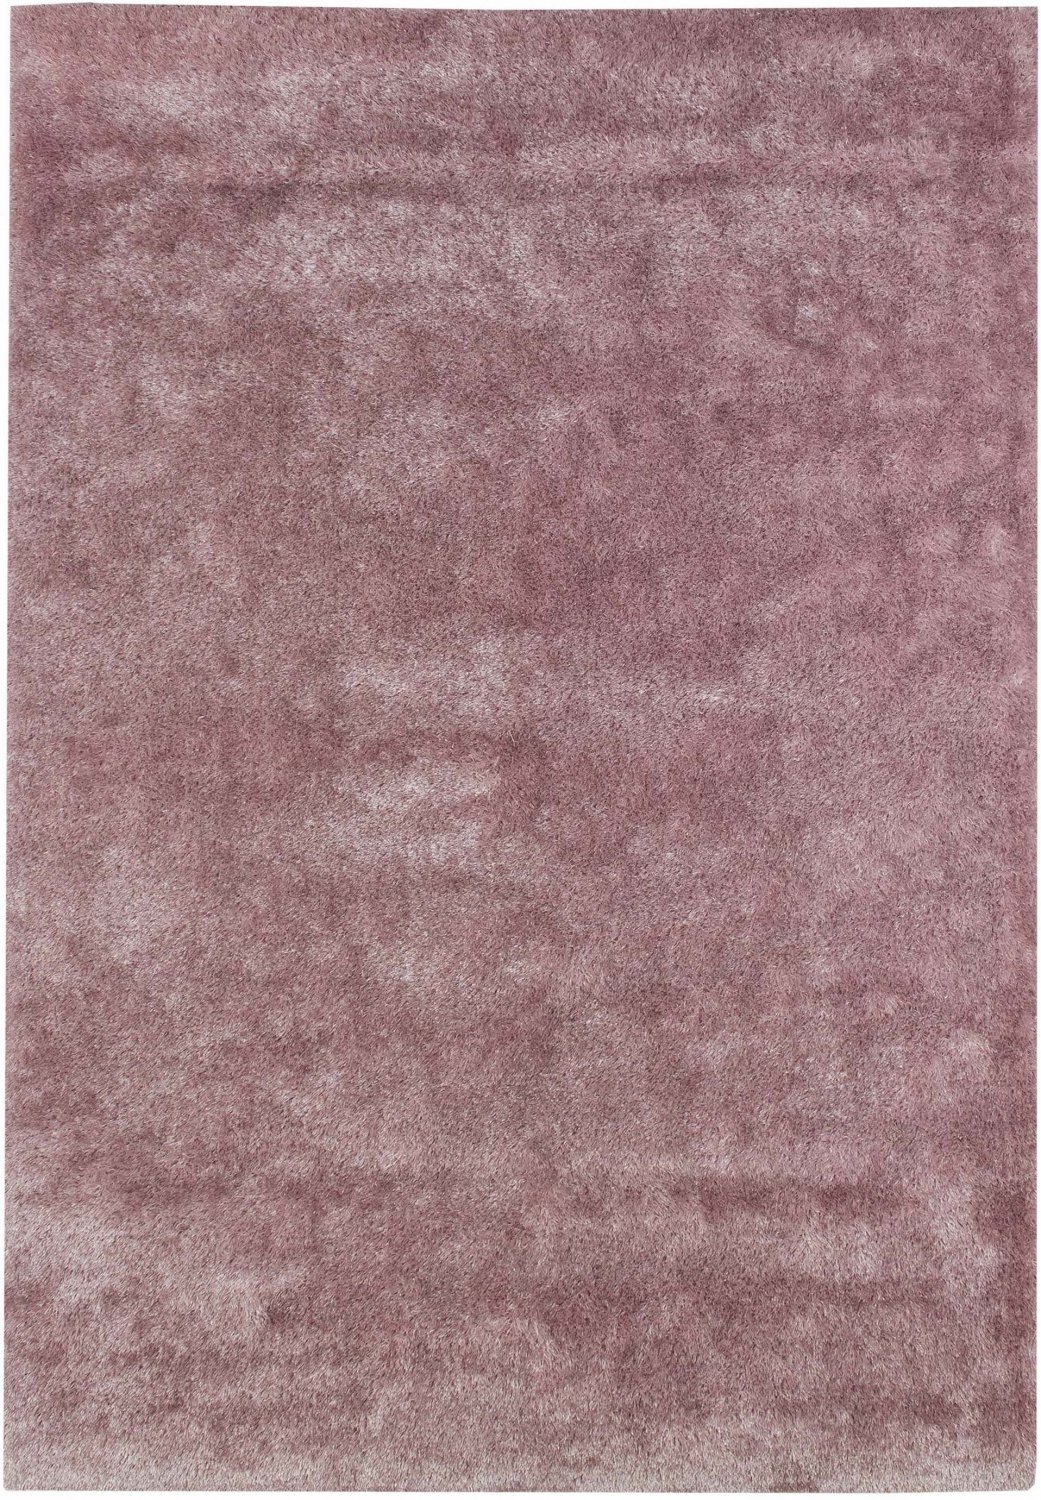 Cosy matta rya ryamatta rund rosa lång lugg kort 60x120 cm 80x 150 cm 140x200 cm 160x230 cm 200x300 cm